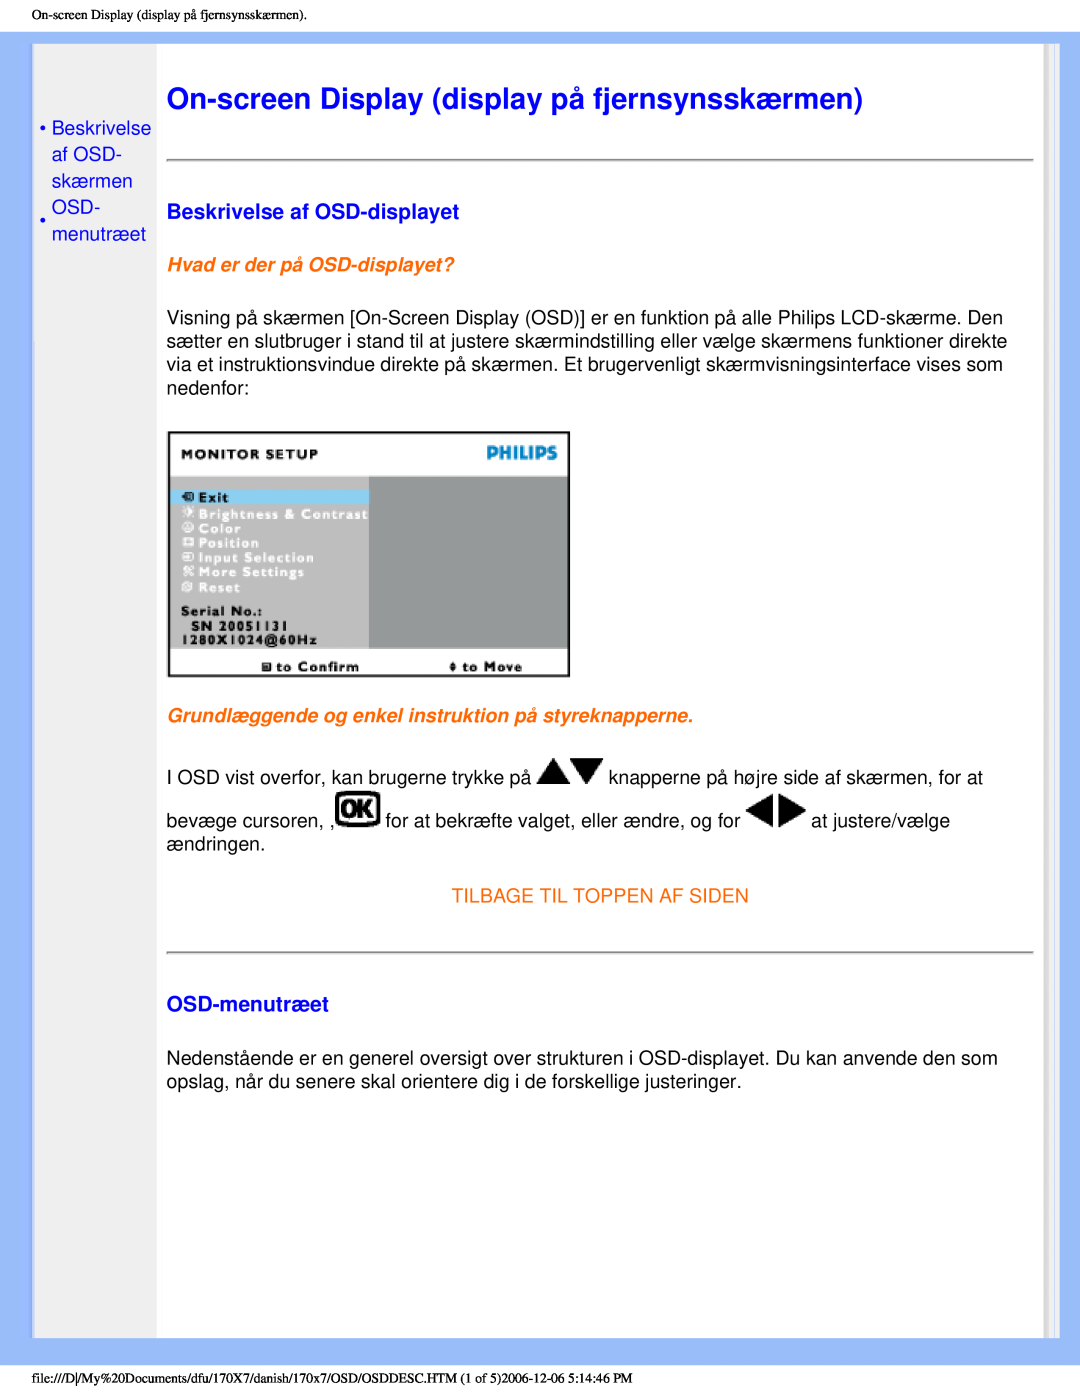 Philips 170x7 user manual On-screen Display display på fjernsynsskærmen, Beskrivelse af OSD-displayet, OSD-menutræet 